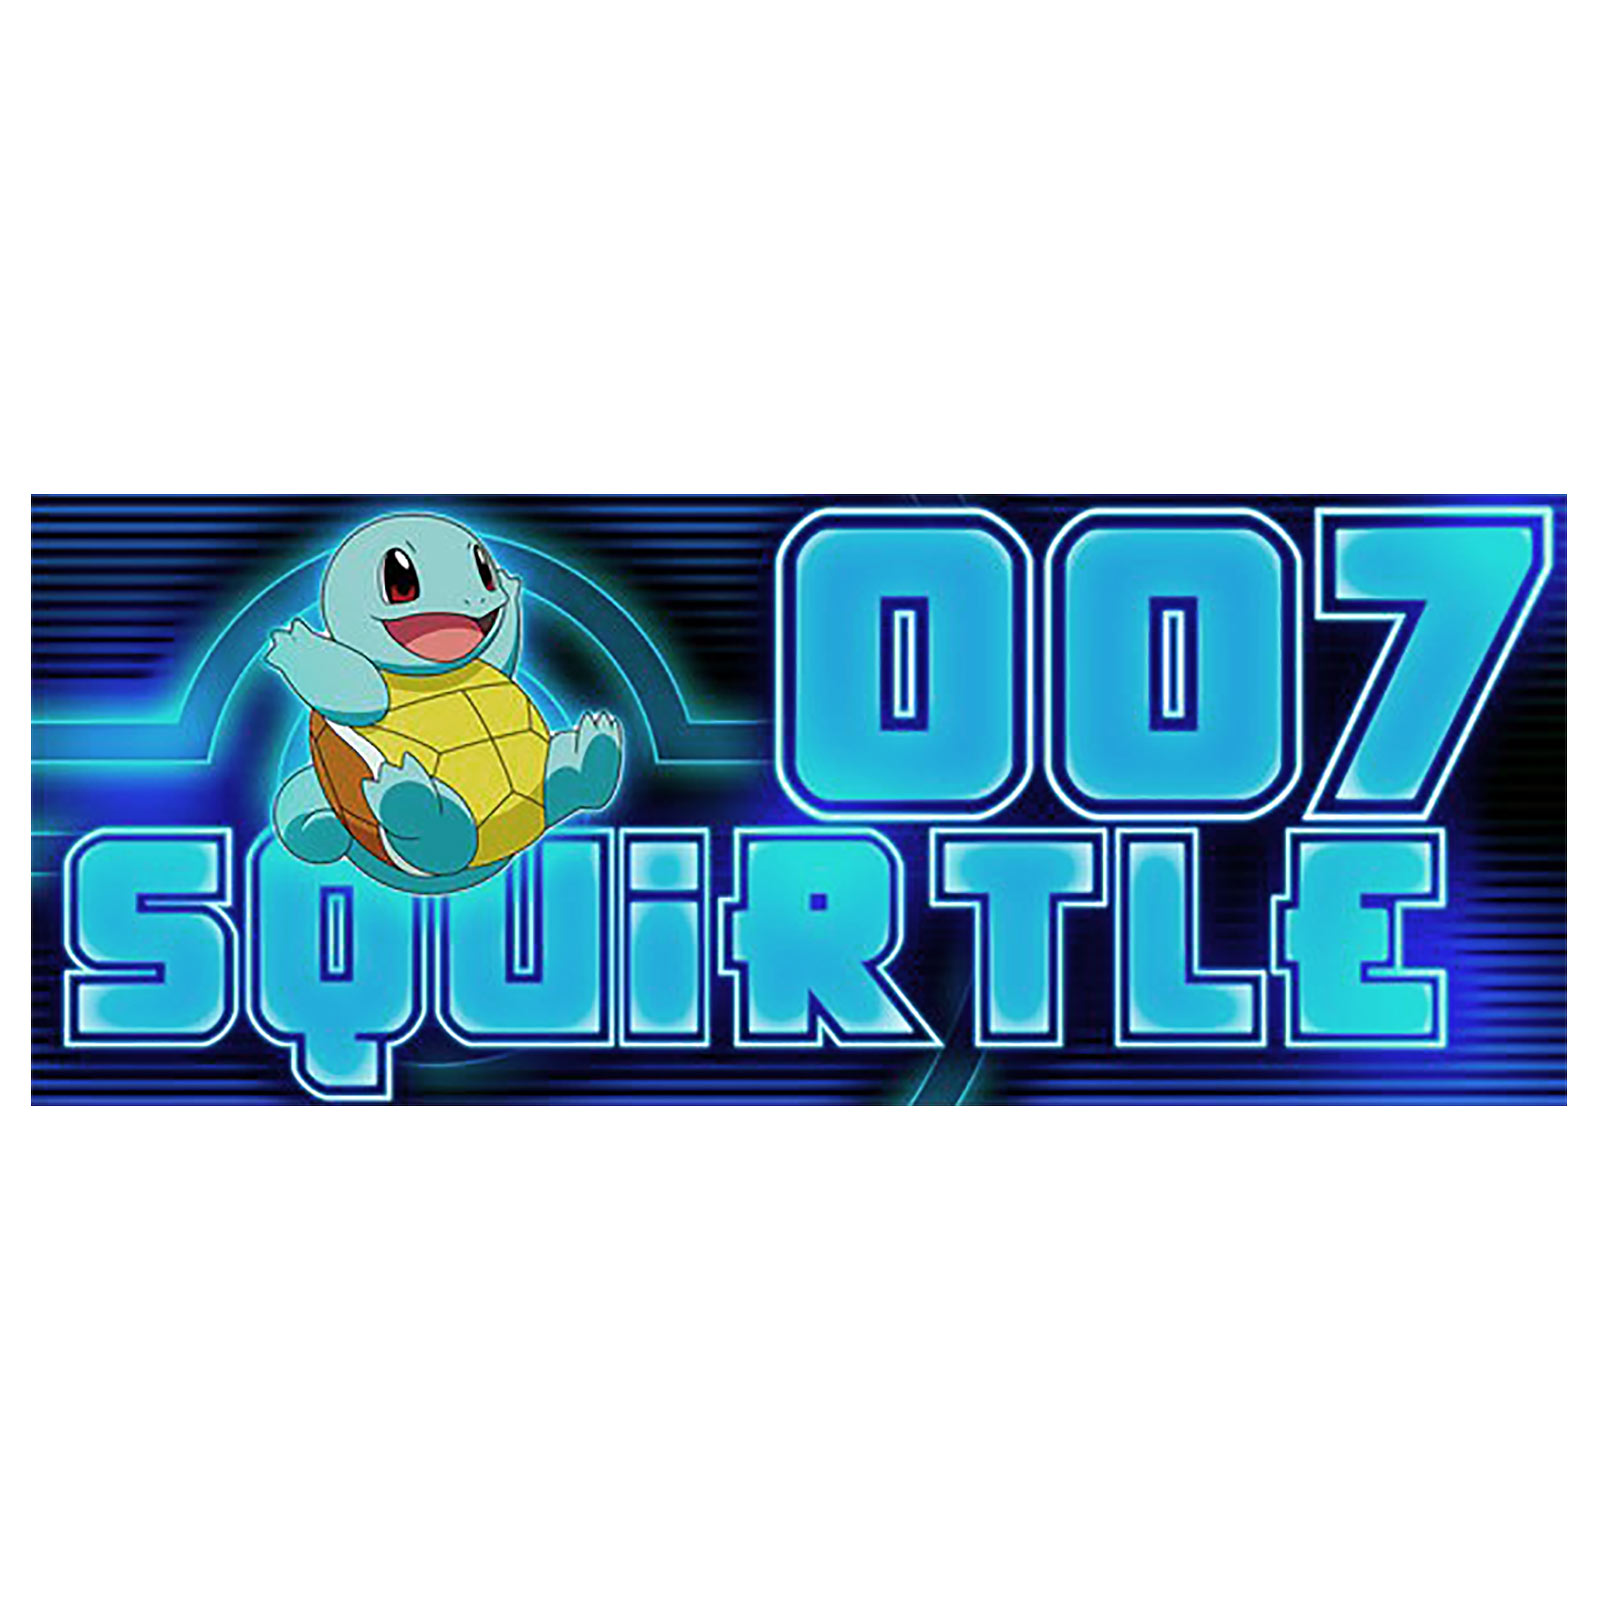 Pokemon - Squirtle 007 Mok